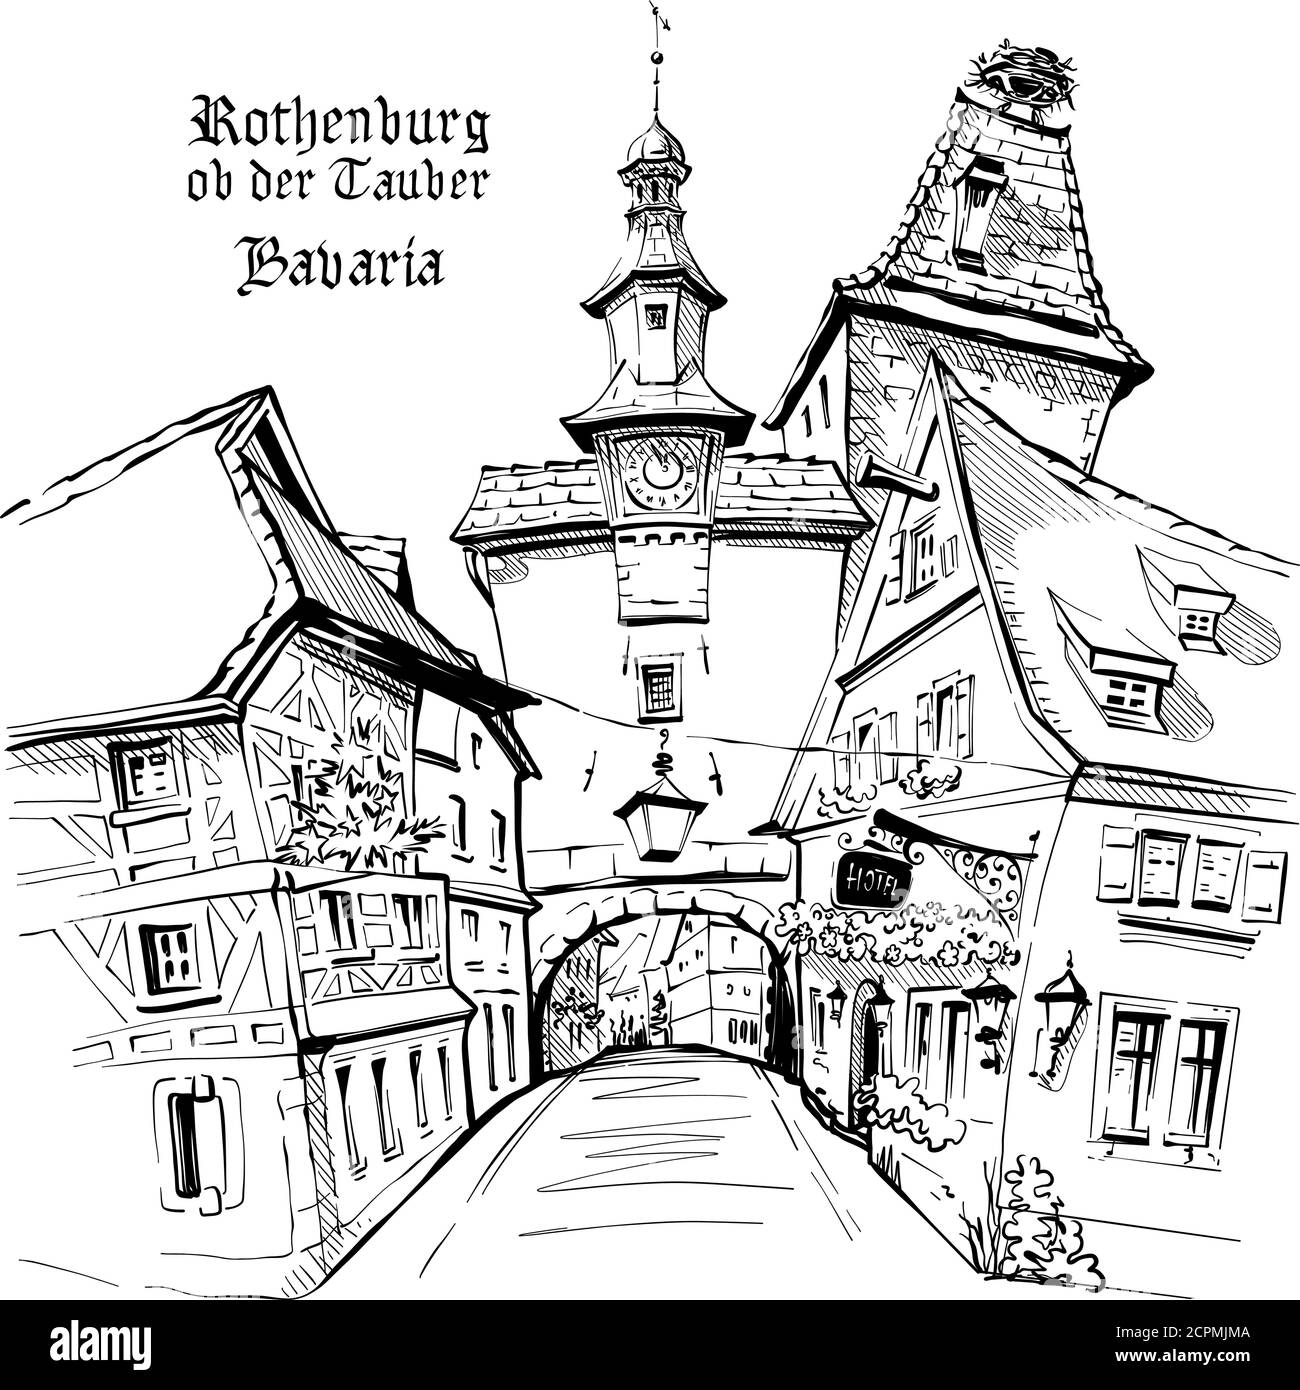 Croquis vectoriel de Markusturm dans la vieille ville médiévale de Rothenburg ob der Tauber, Bavière Illustration de Vecteur